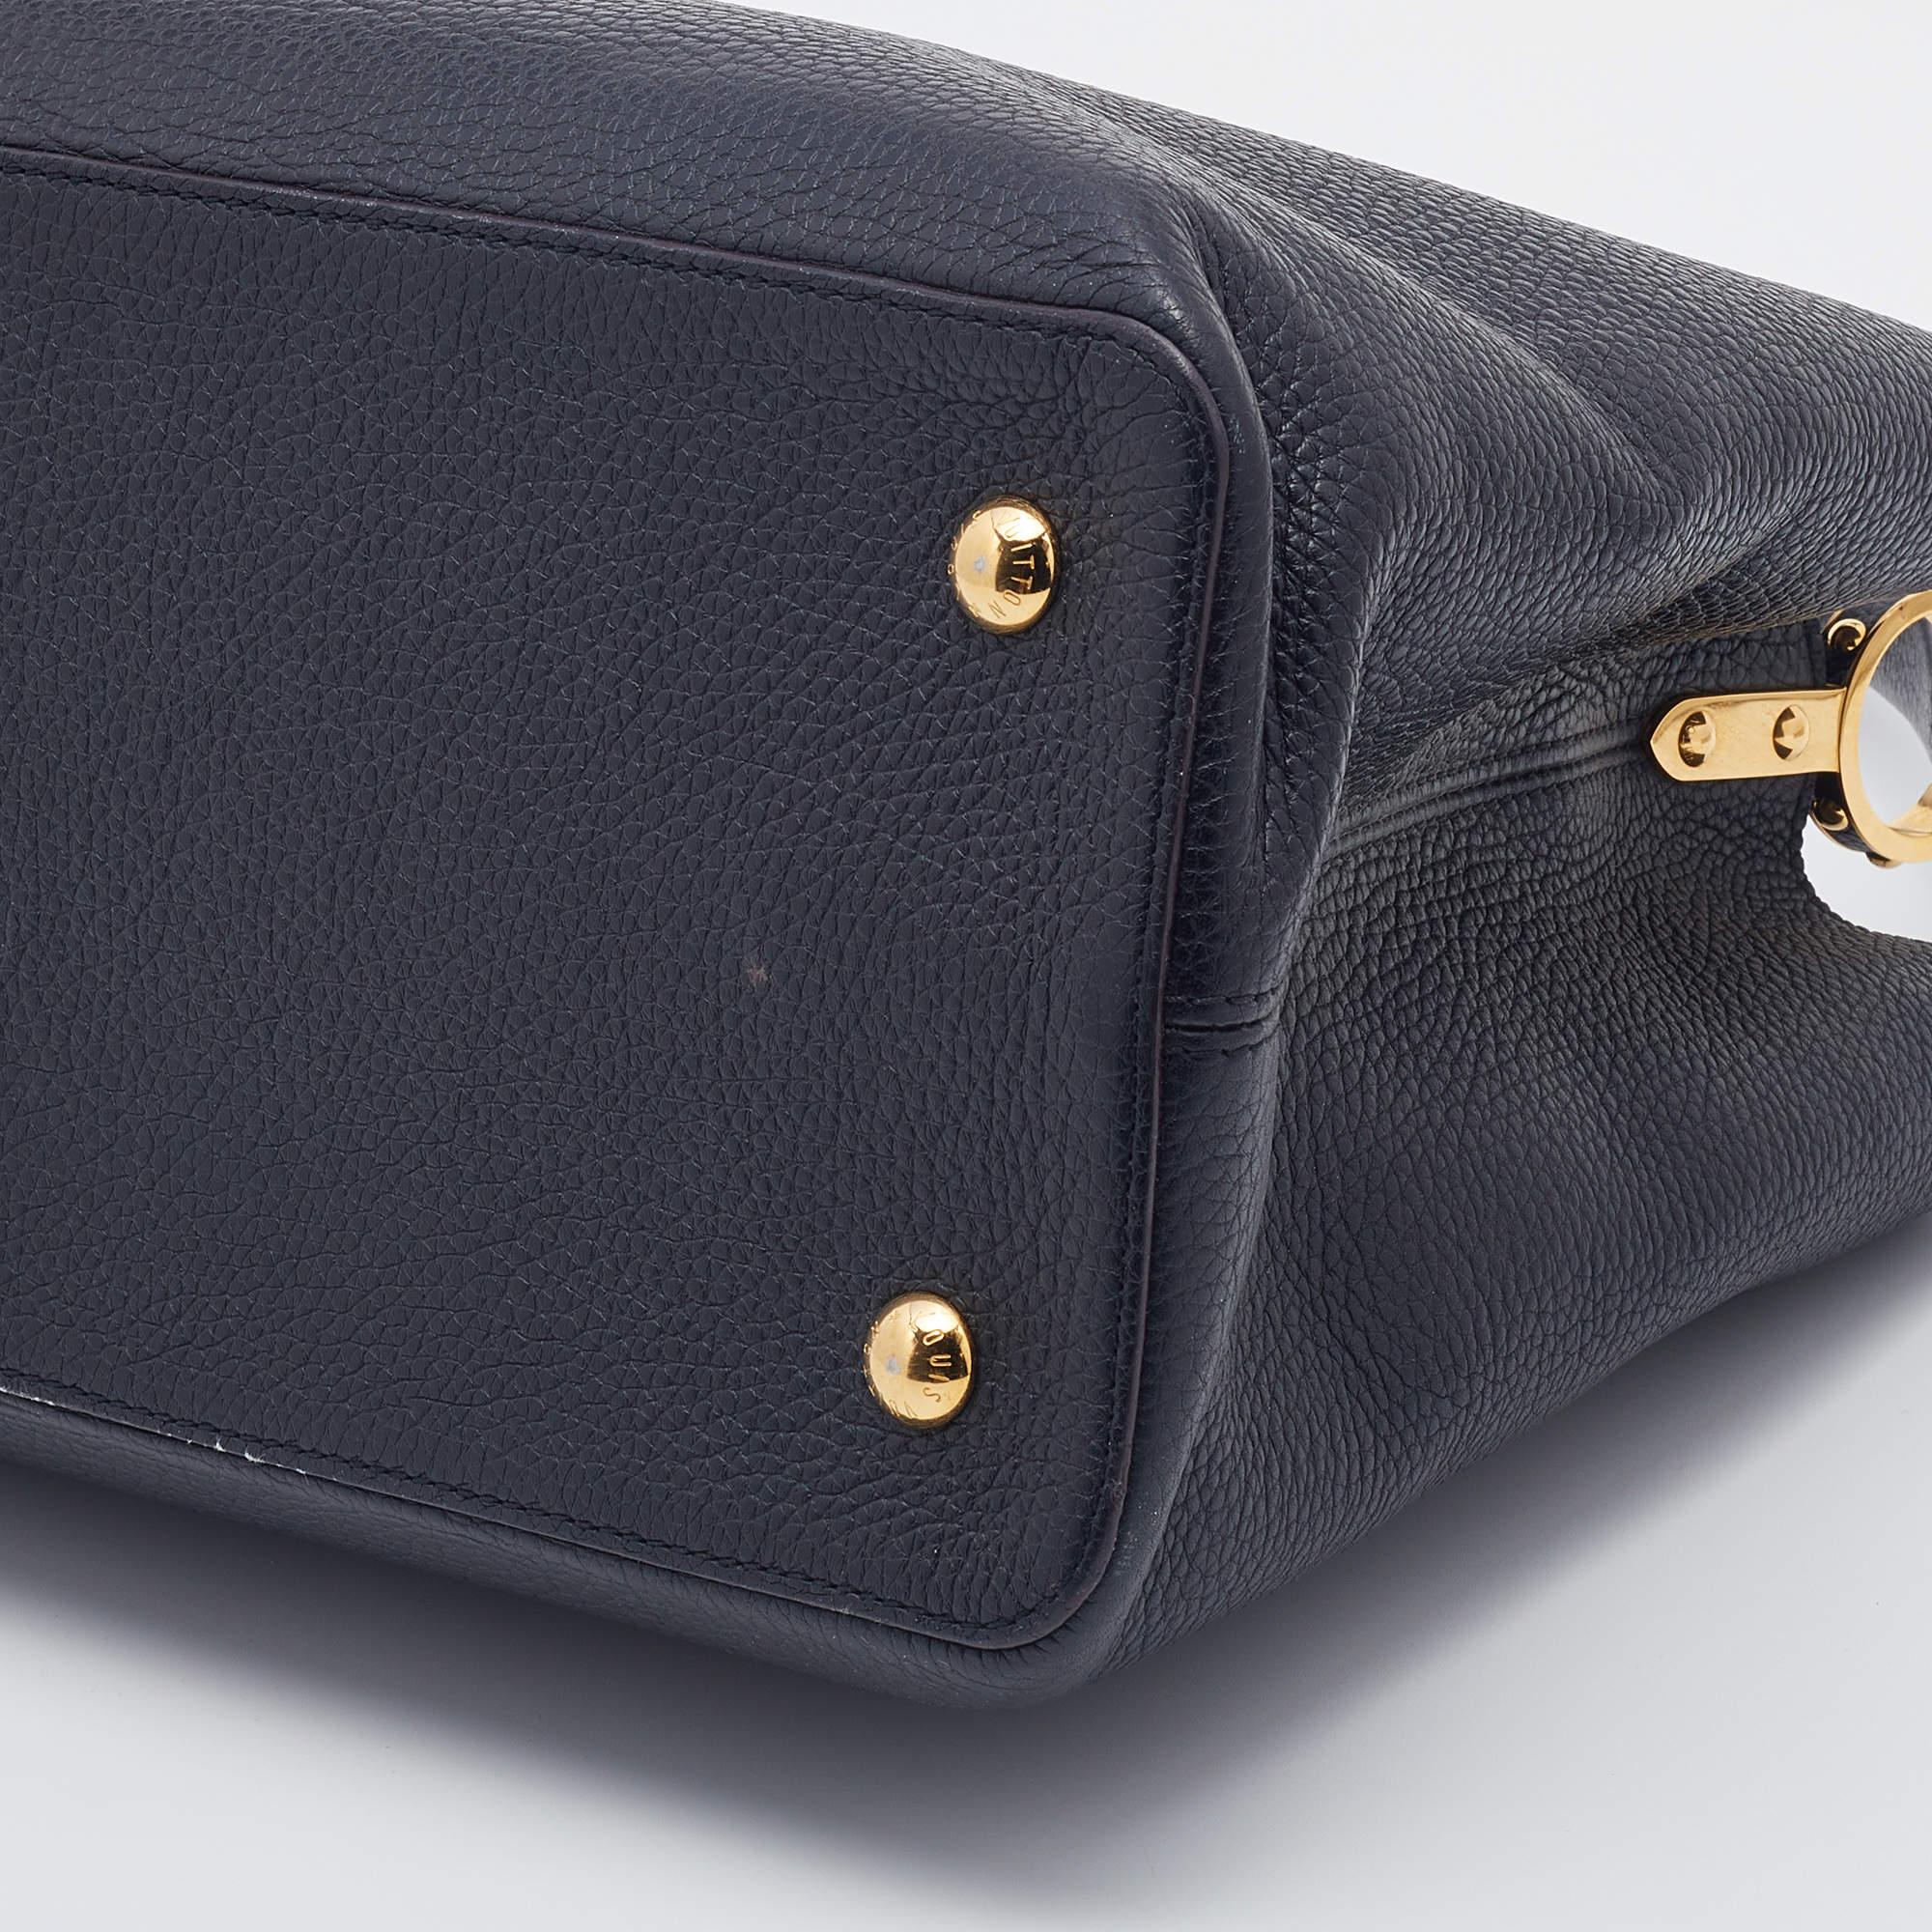 Louis Vuitton Black Taurillon Leather Capucines GM Bag 5